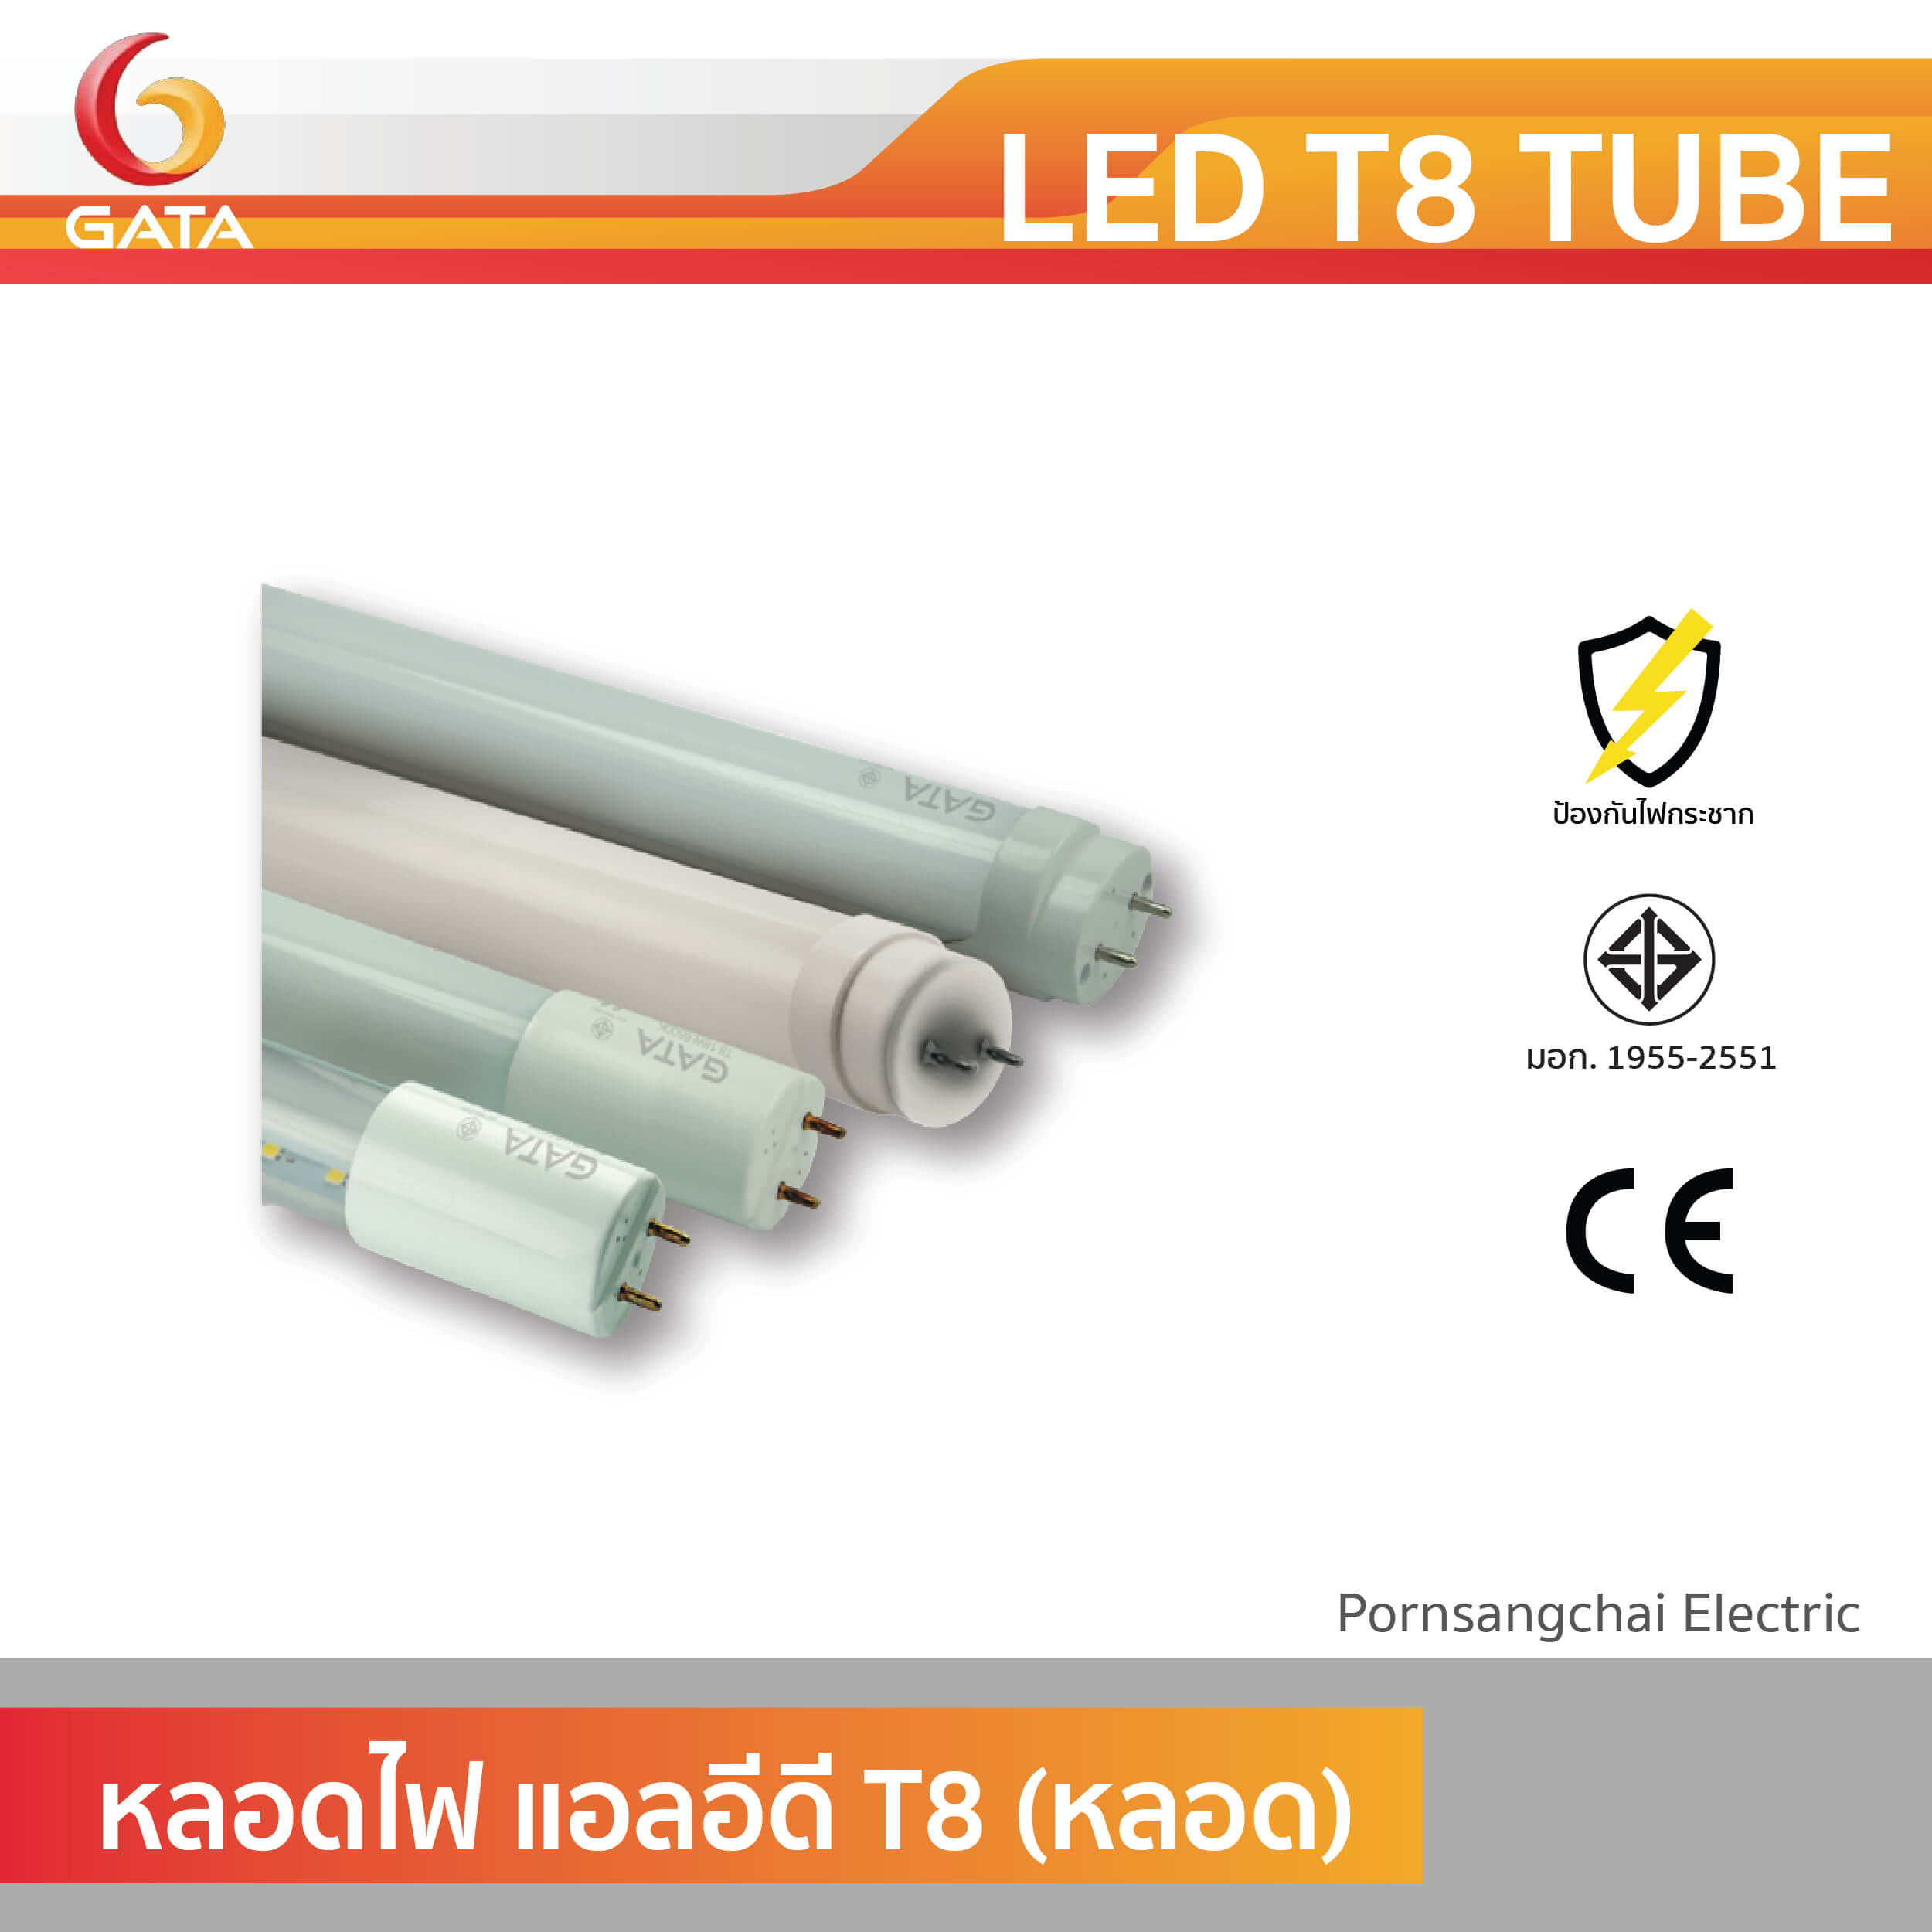 GATA หลอดไฟ LED T8 TUBE